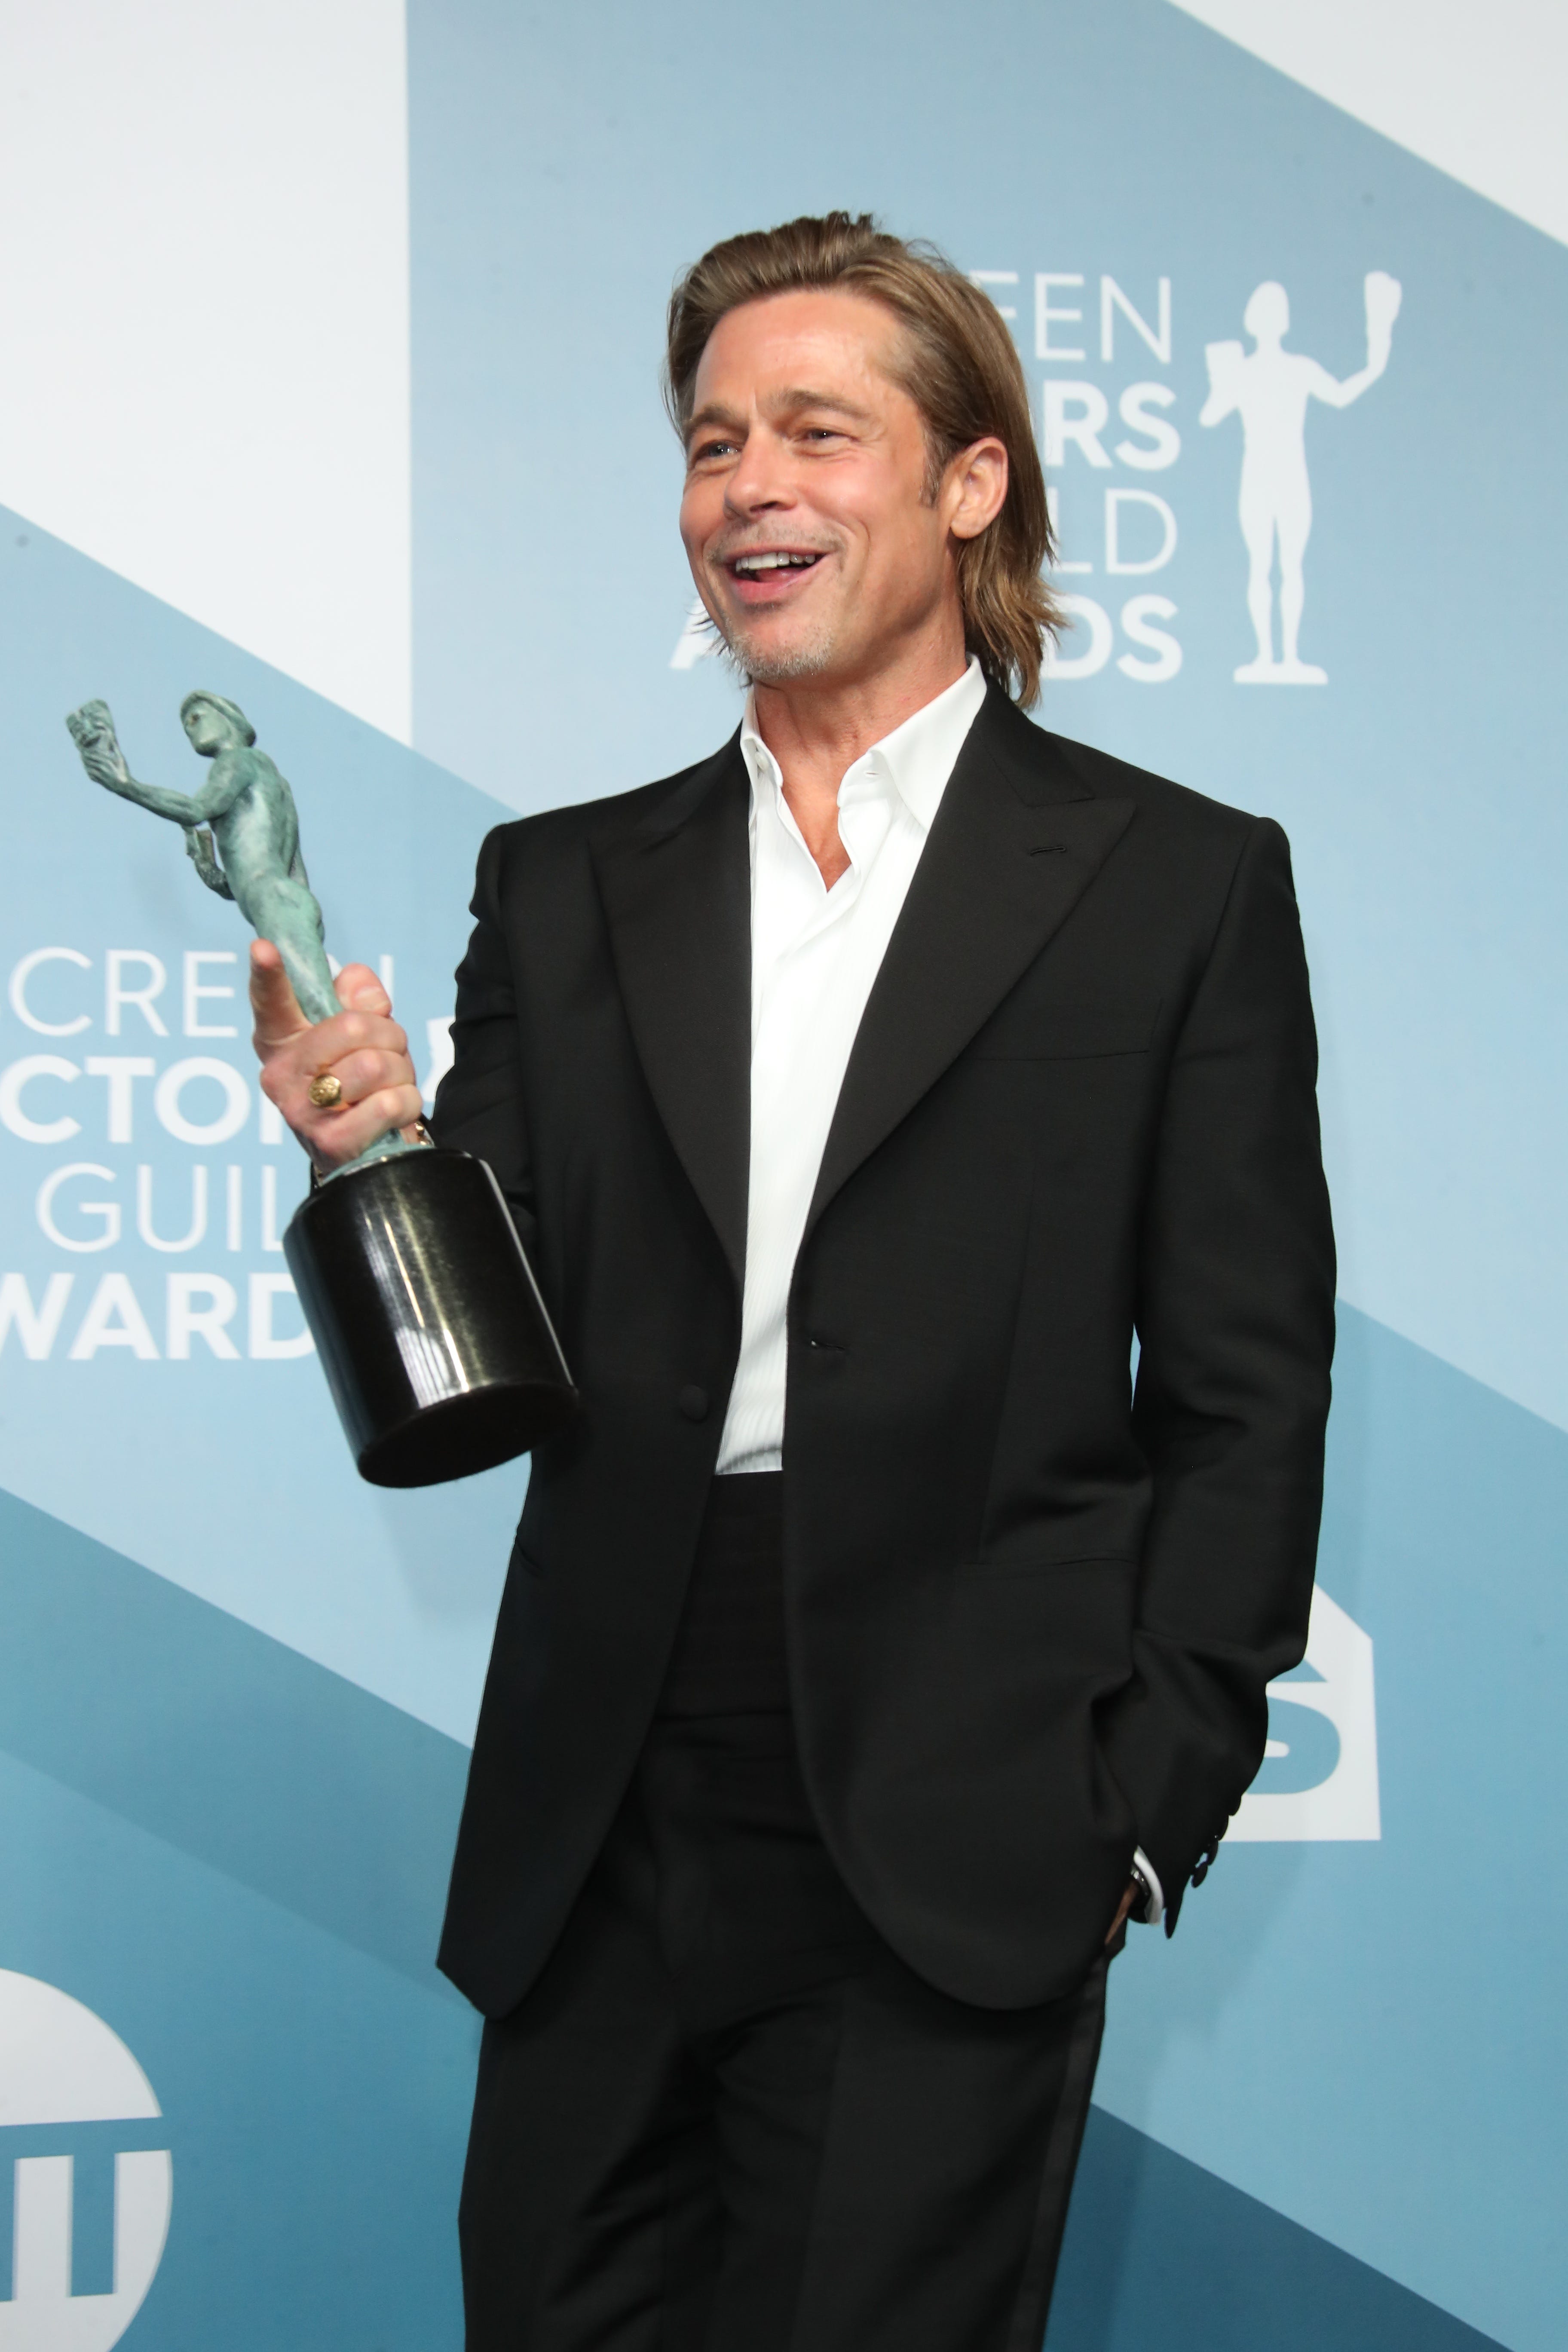 SAG Awards: Brad Pitt, Jennifer Aniston get real backstage after wins